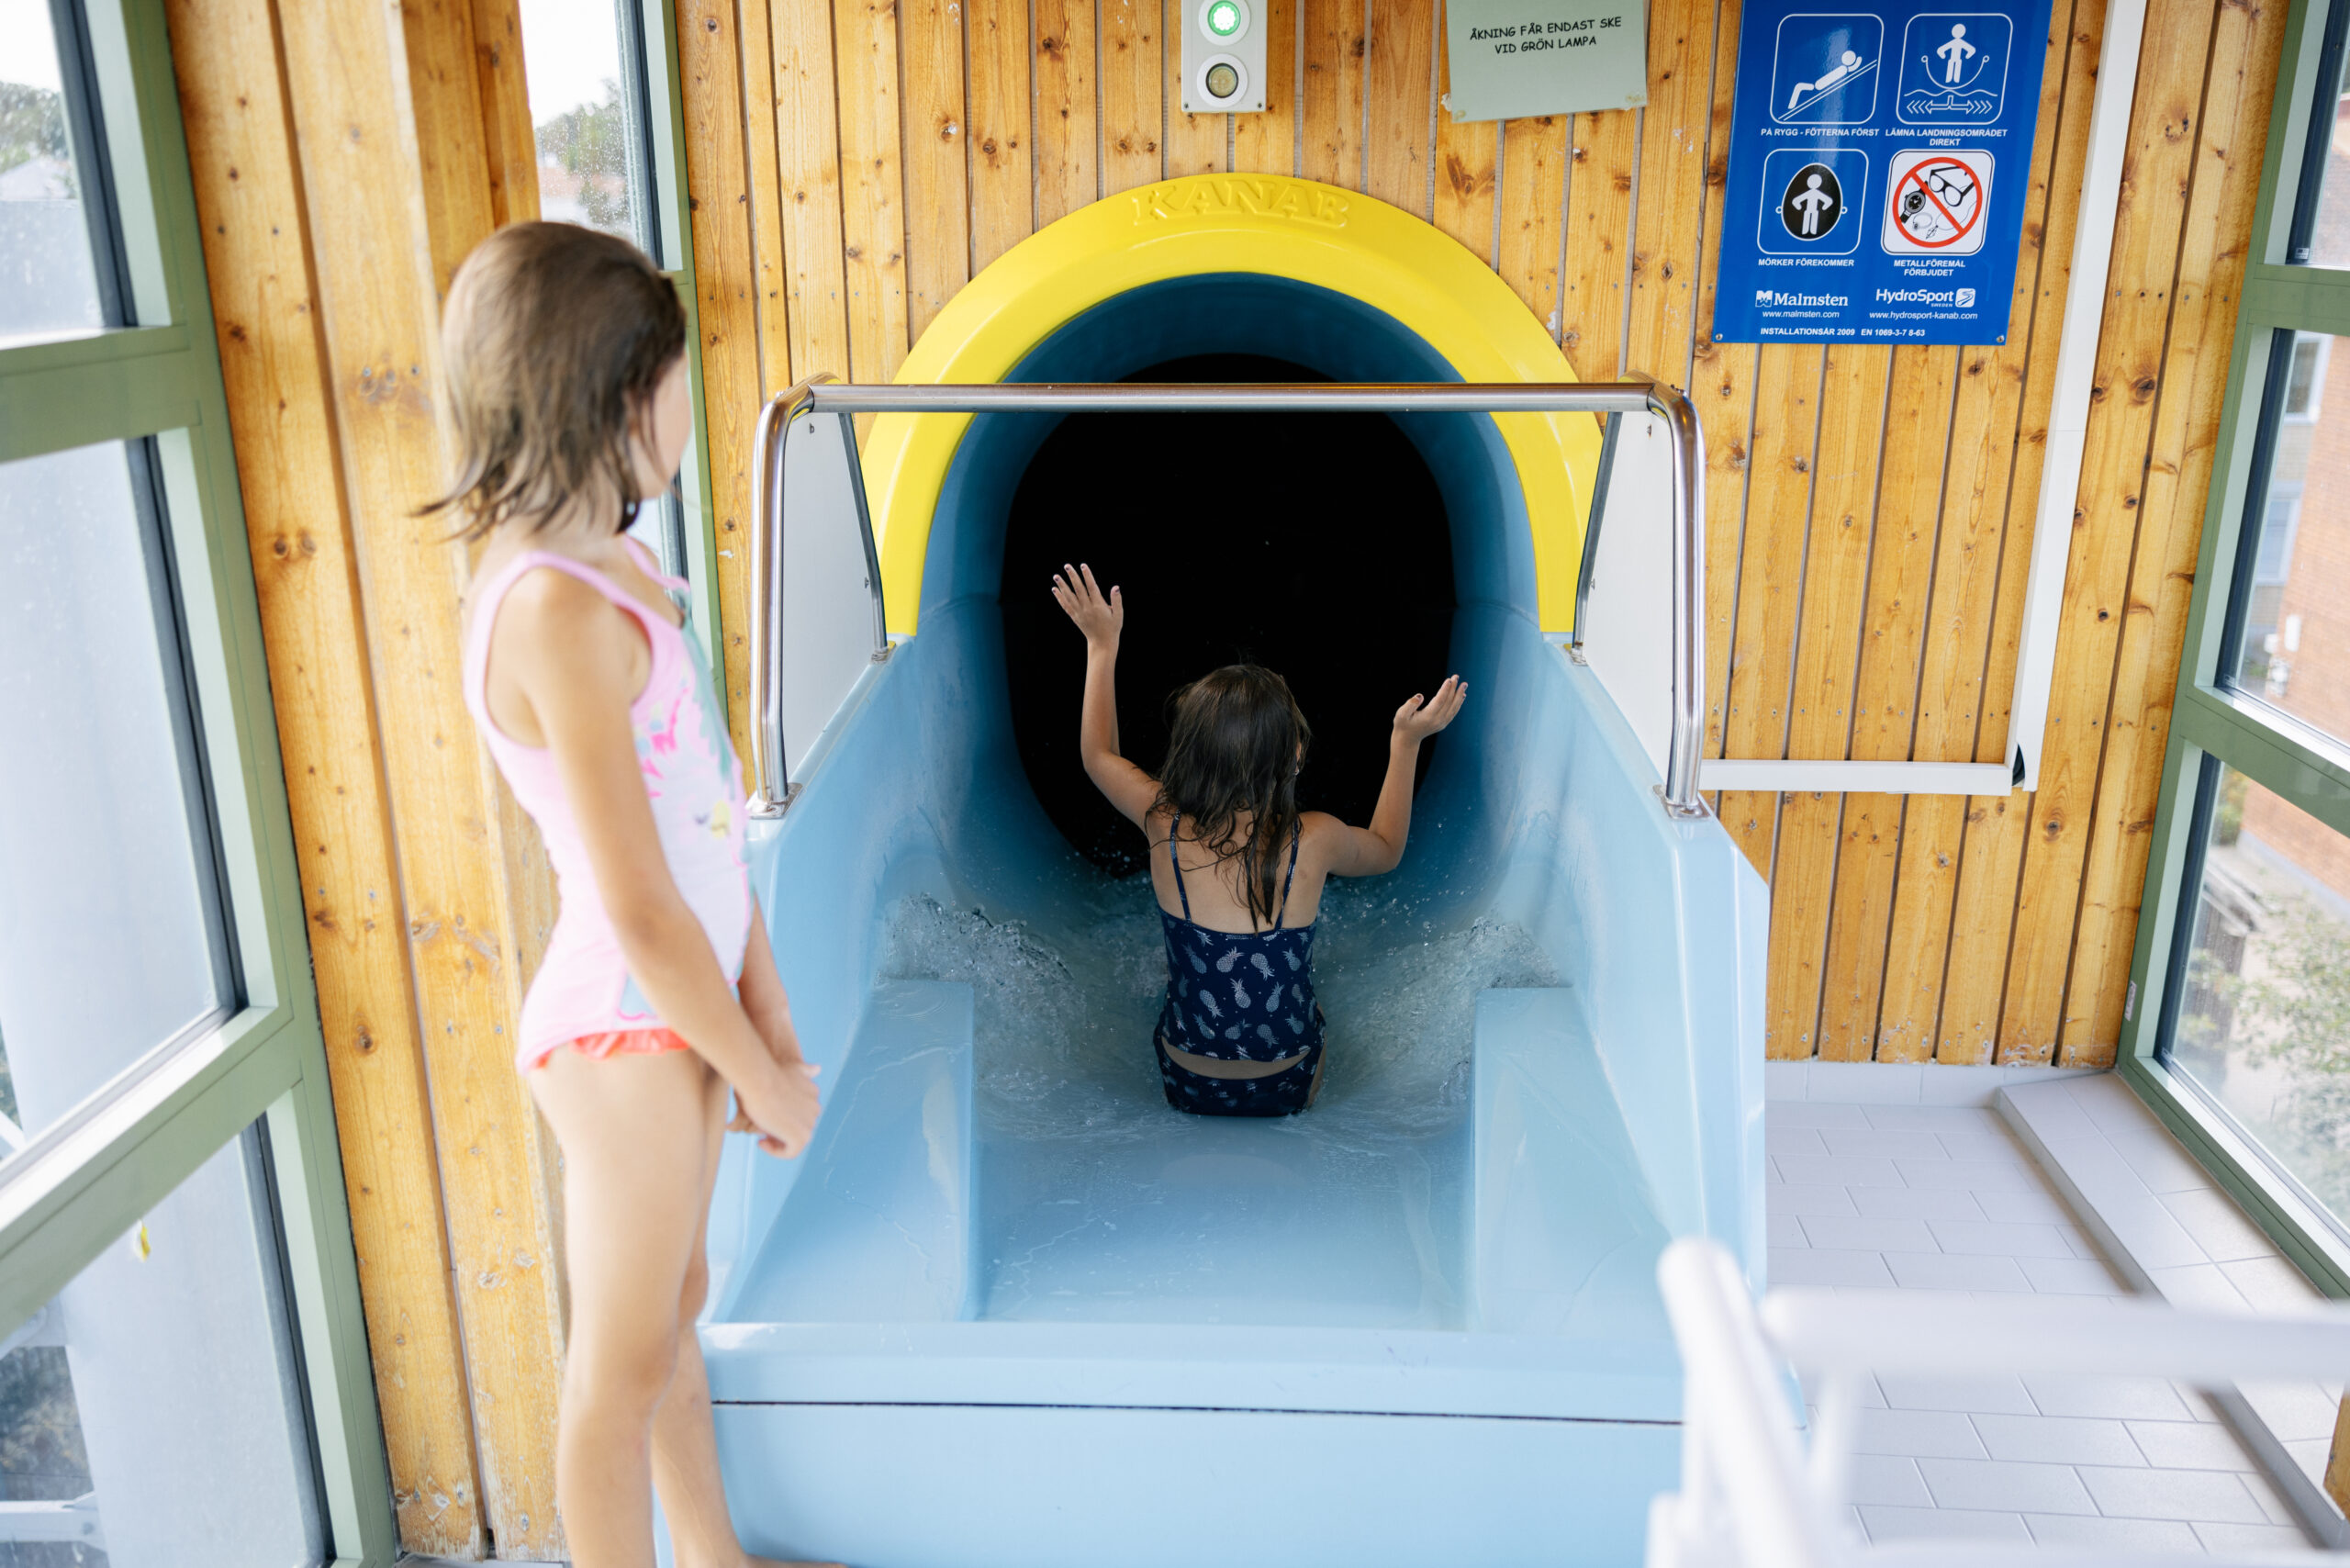 Två barn åker vattenrutschkana på simhallen.